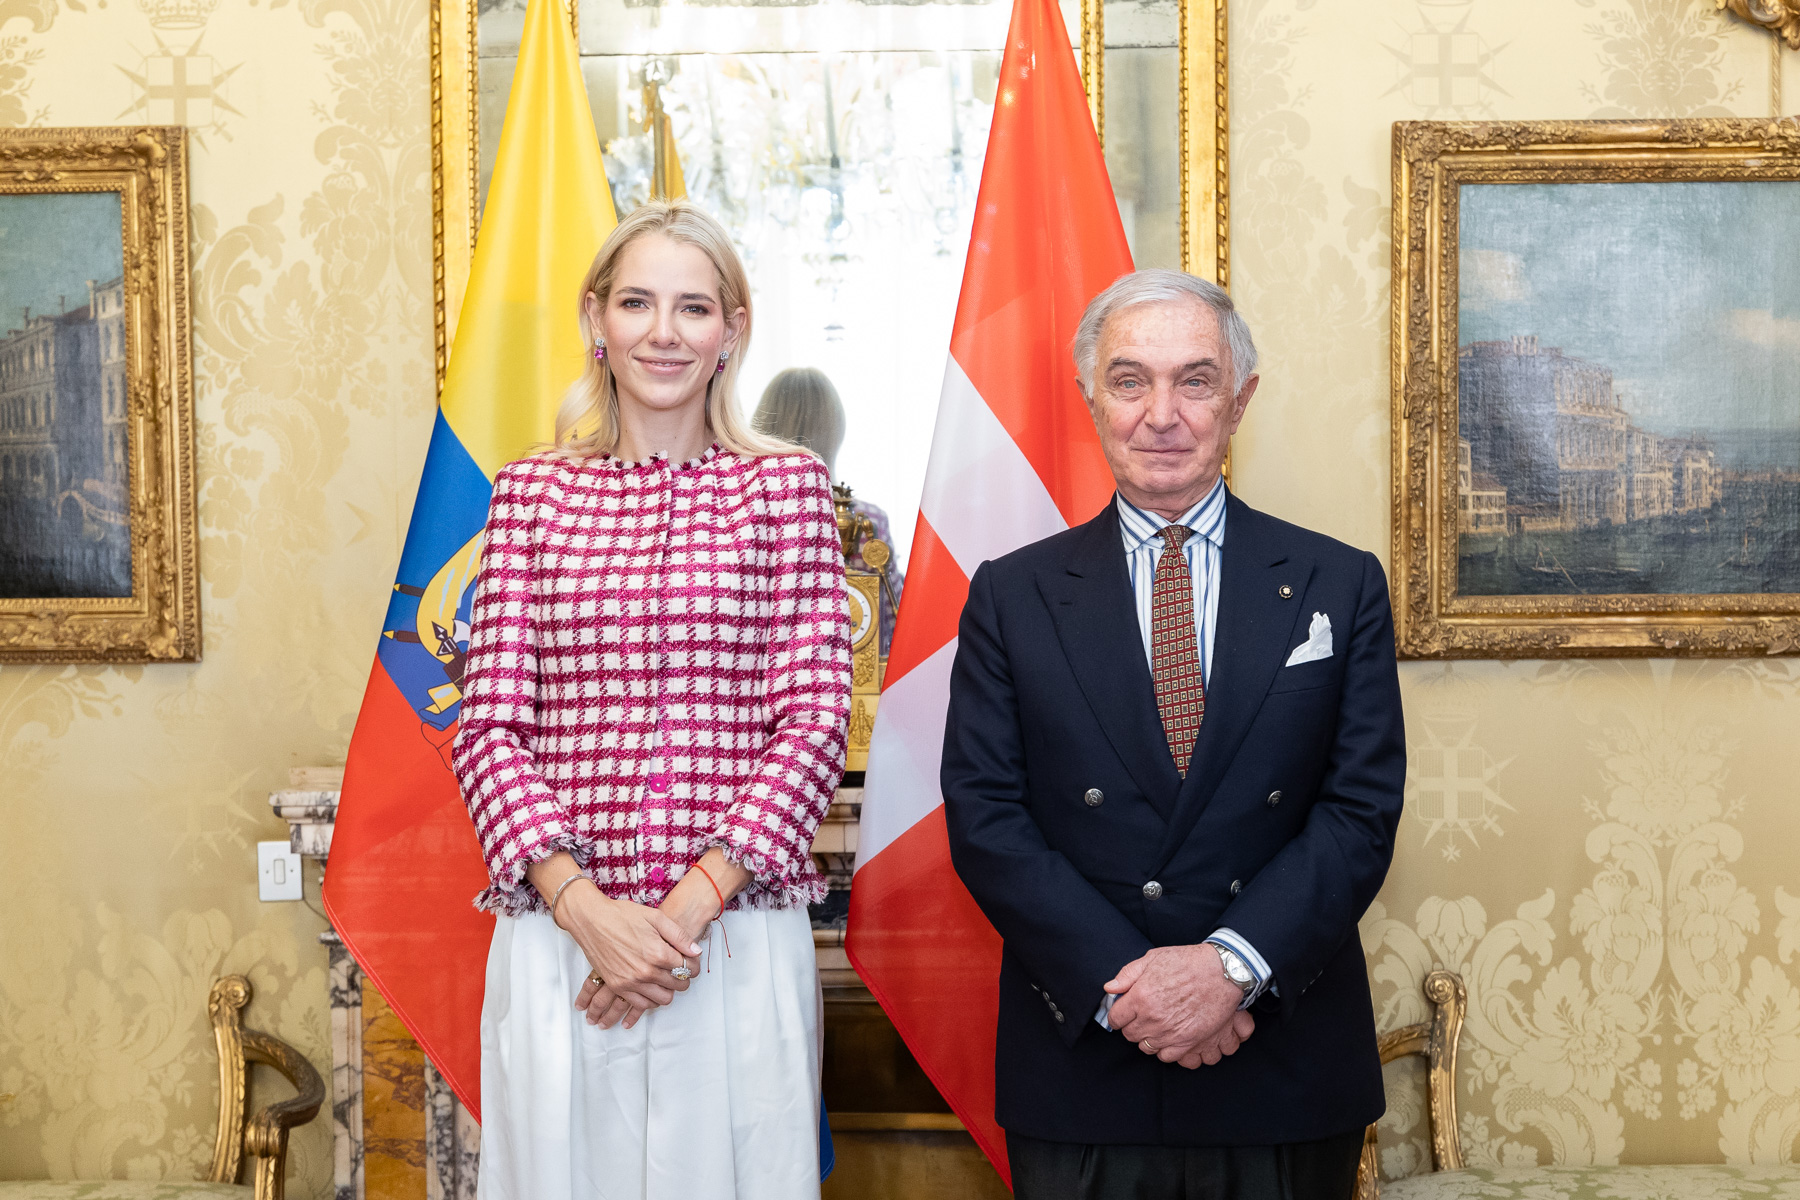 Die First Lady von Ecuador trifft den Großkanzler im Magistralpalast